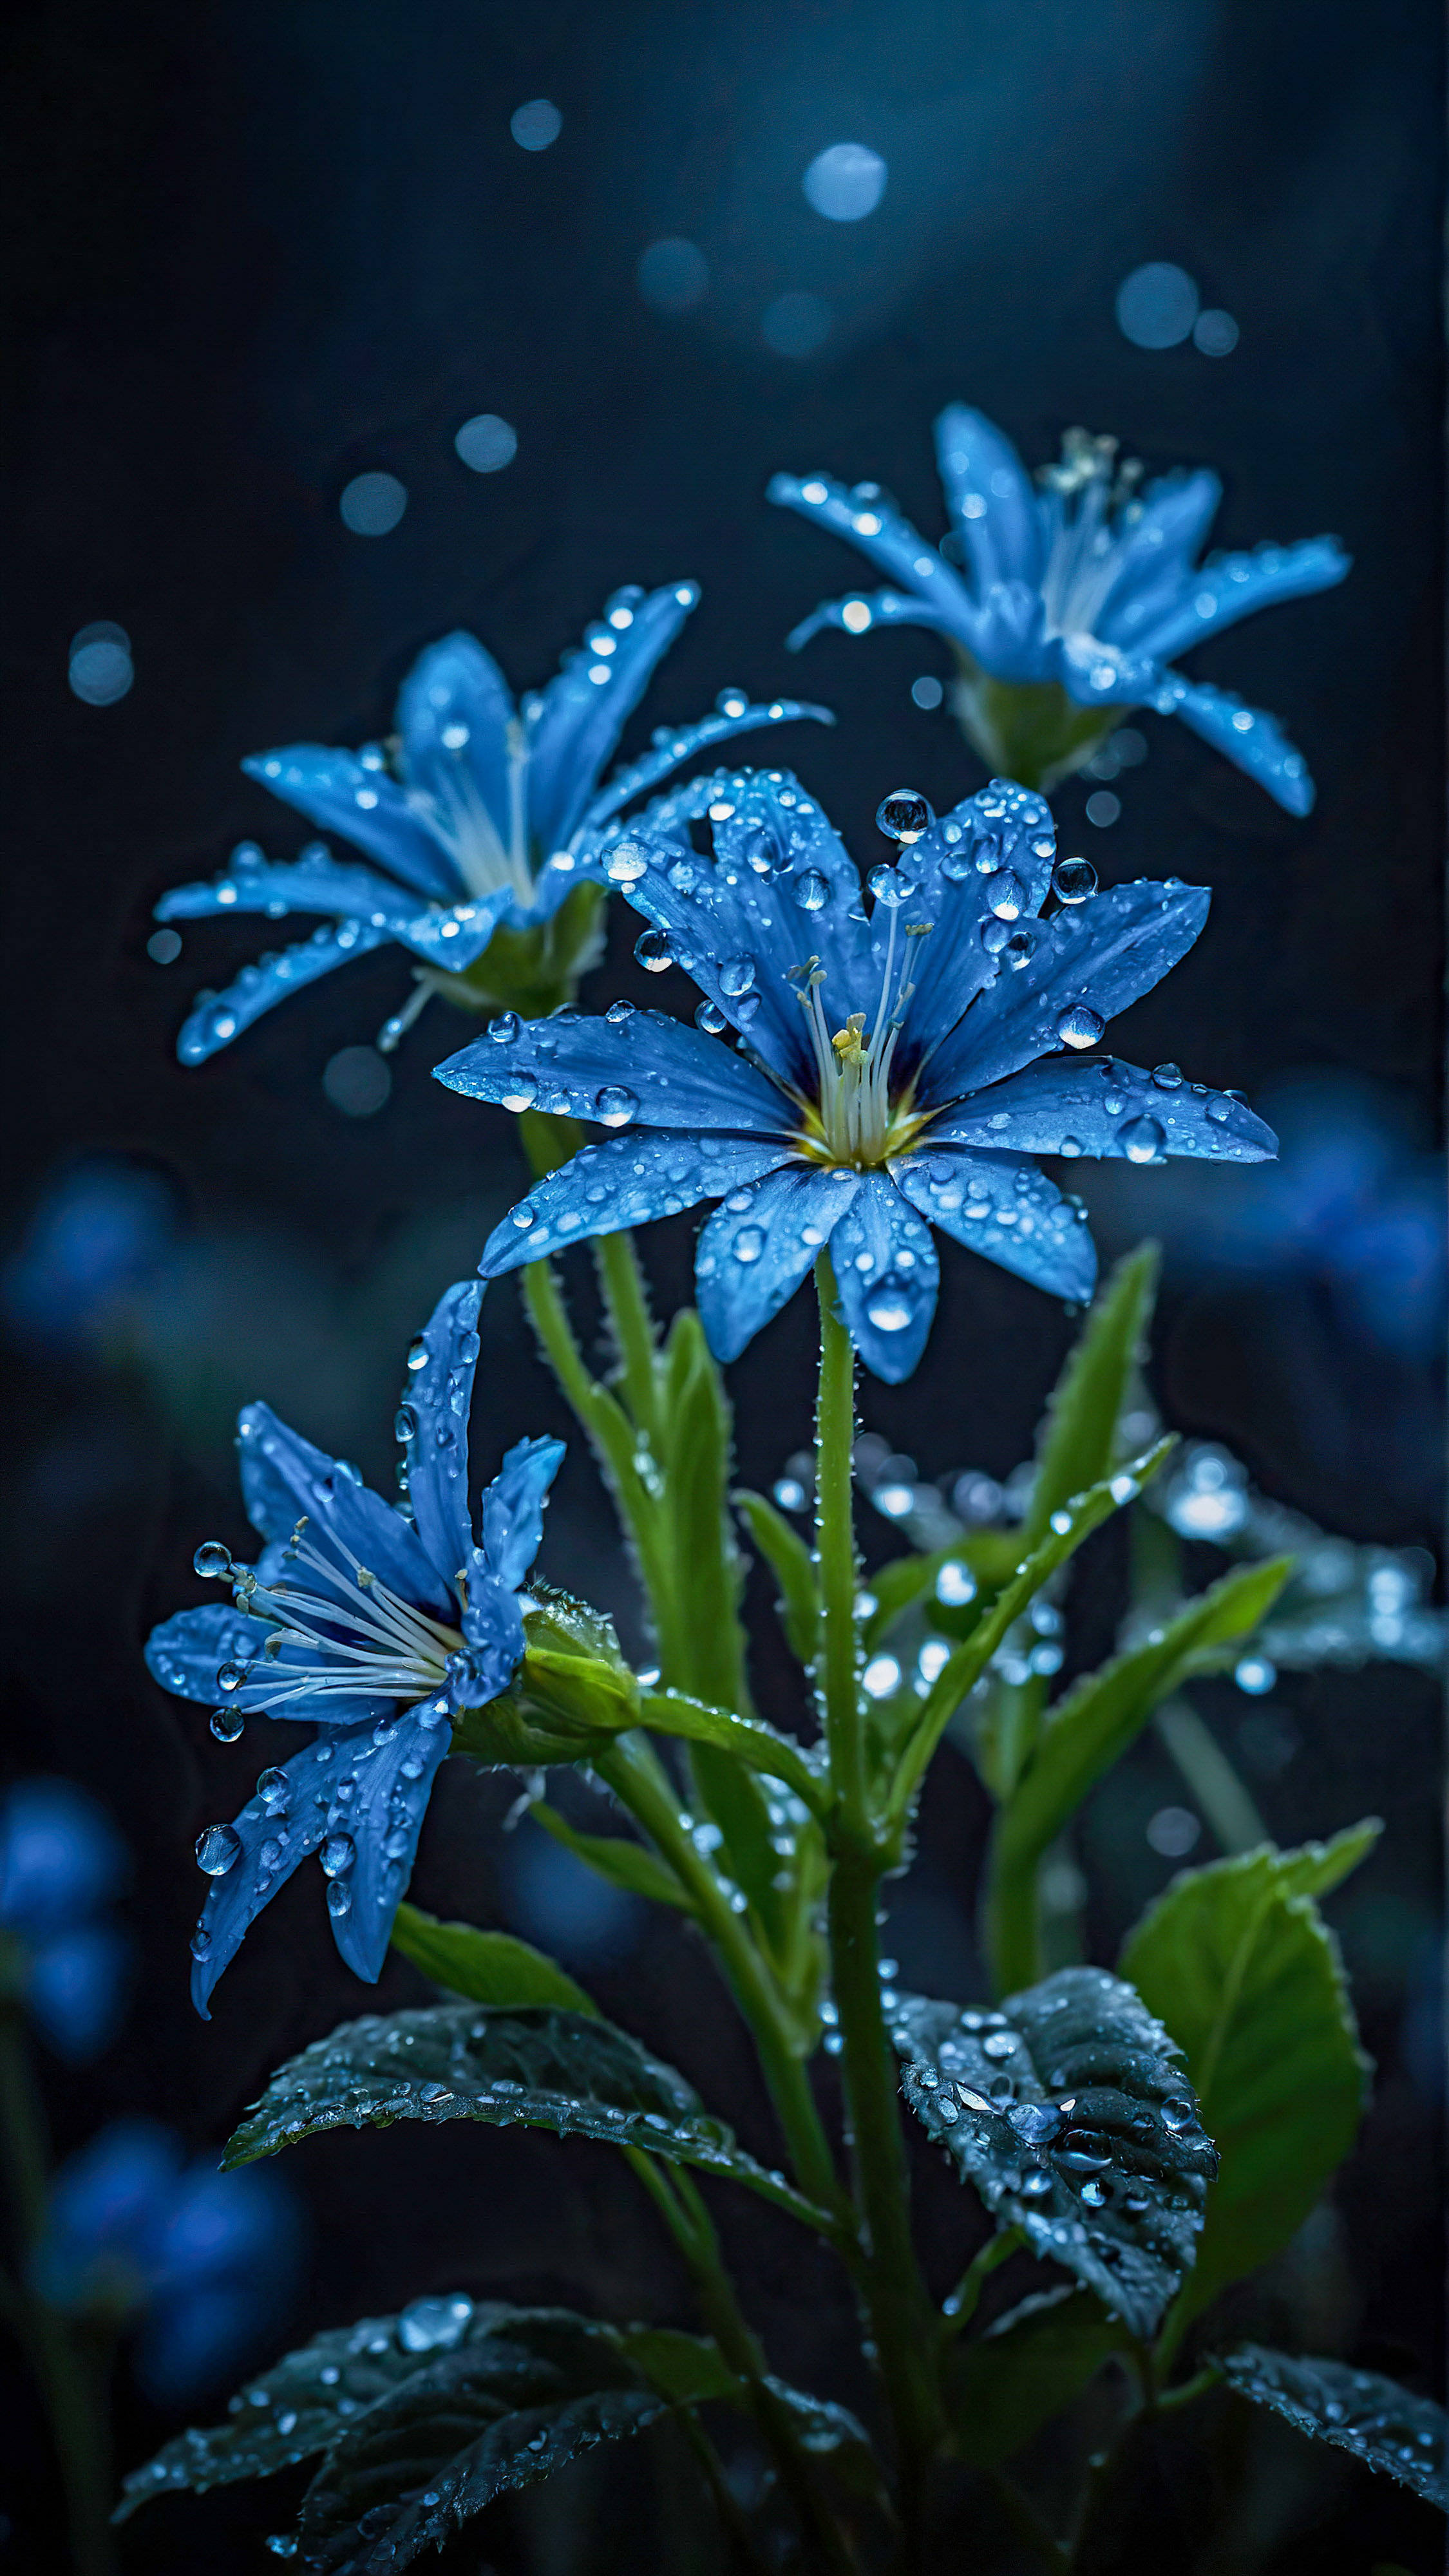 Expérimentez la tranquillité de la nature avec notre beau fond d'écran pour iPhone, une scène sereine et mystique de fleurs bleues lumineuses avec des gouttes de rosée, sur un arrière-plan sombre et flou.